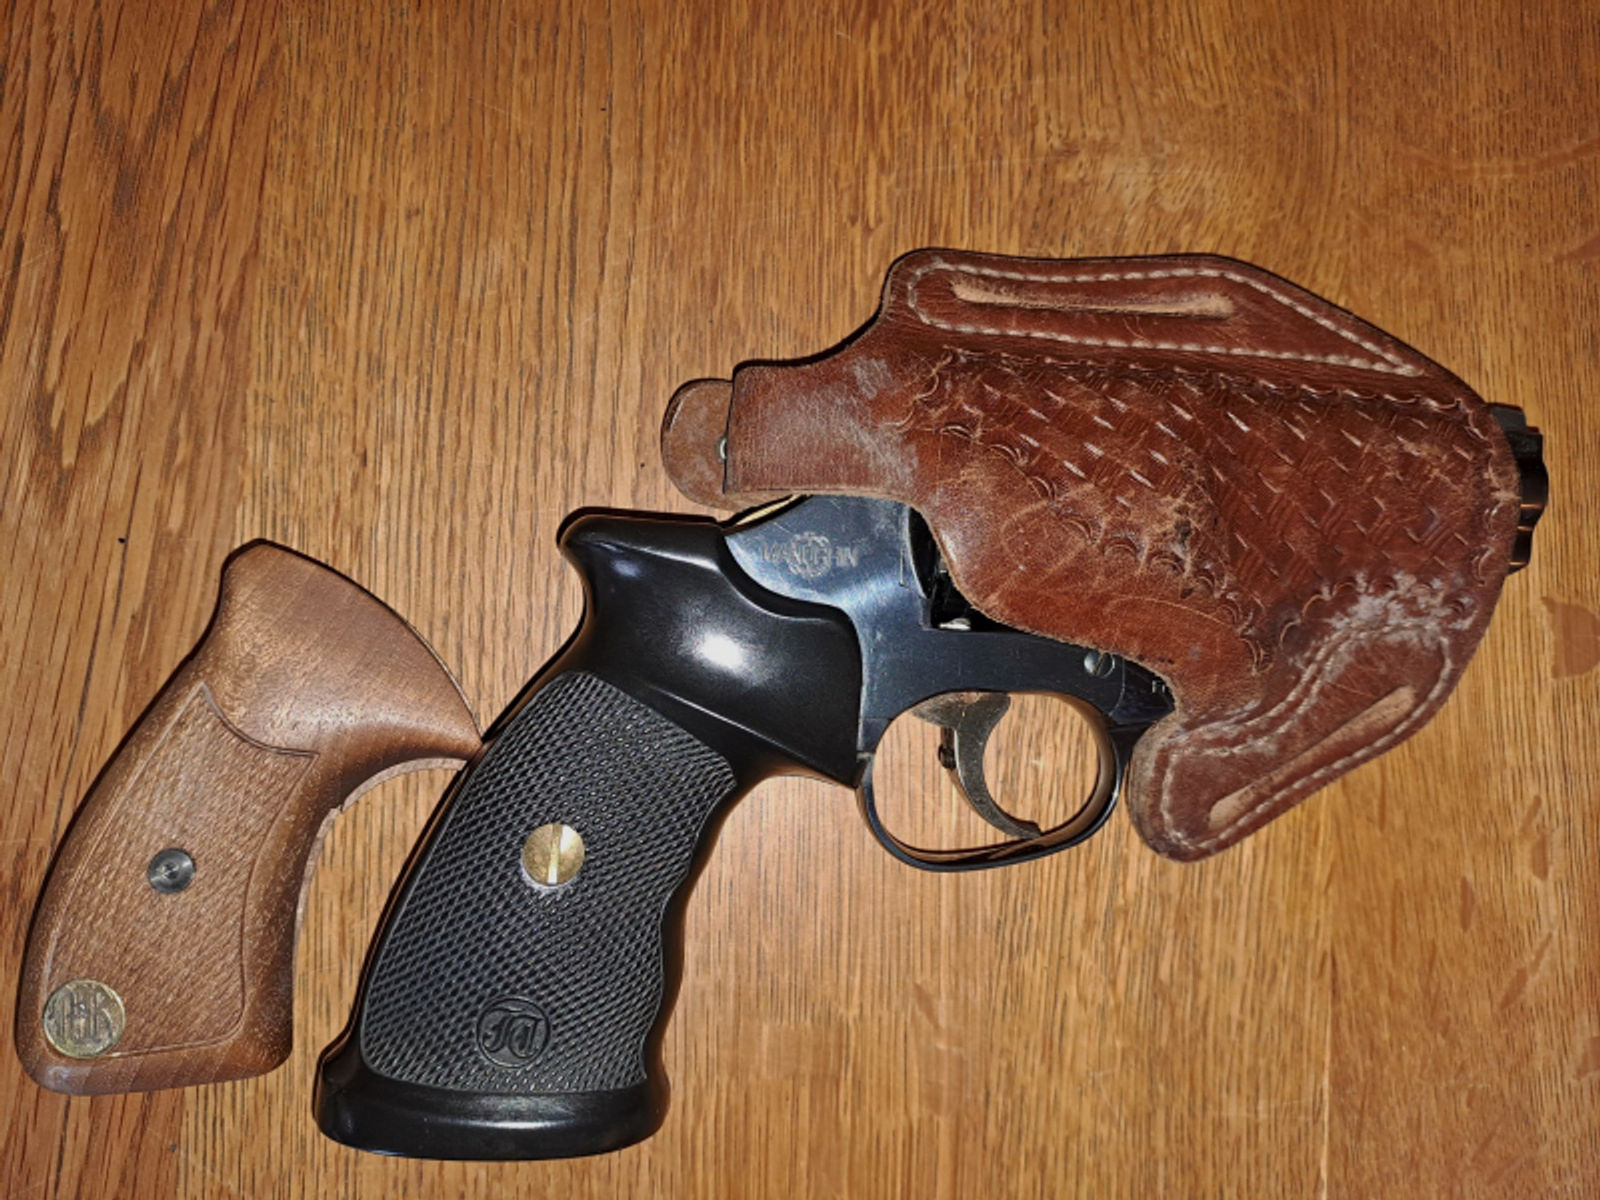 Manurhin Revolver MR 73 Cal.357 Magnum